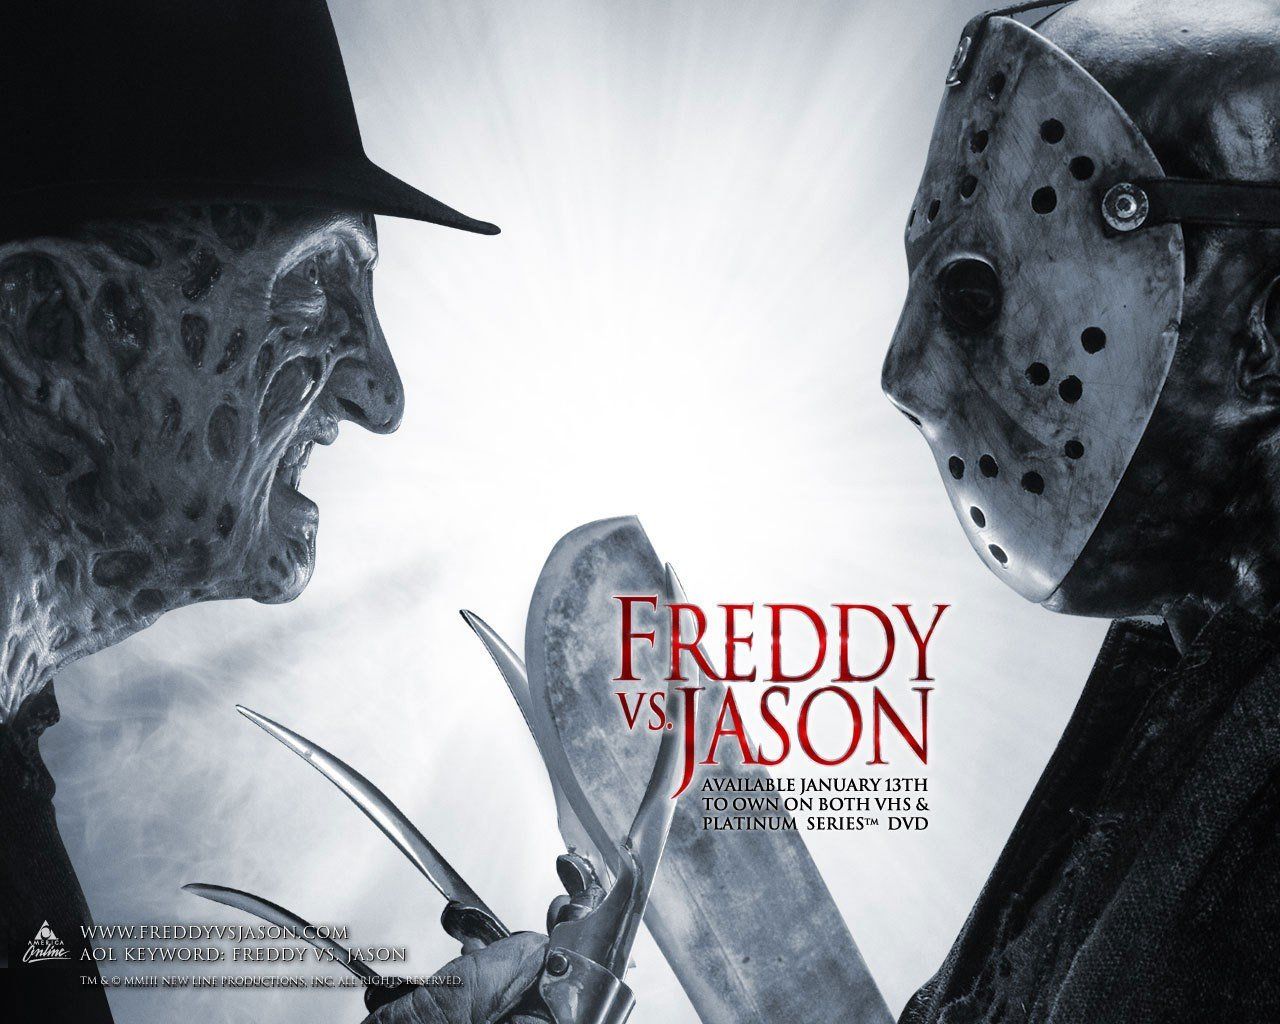 Freddy Krueger, Friday the 13th, Freddy vs. Jason HD Wallpaper